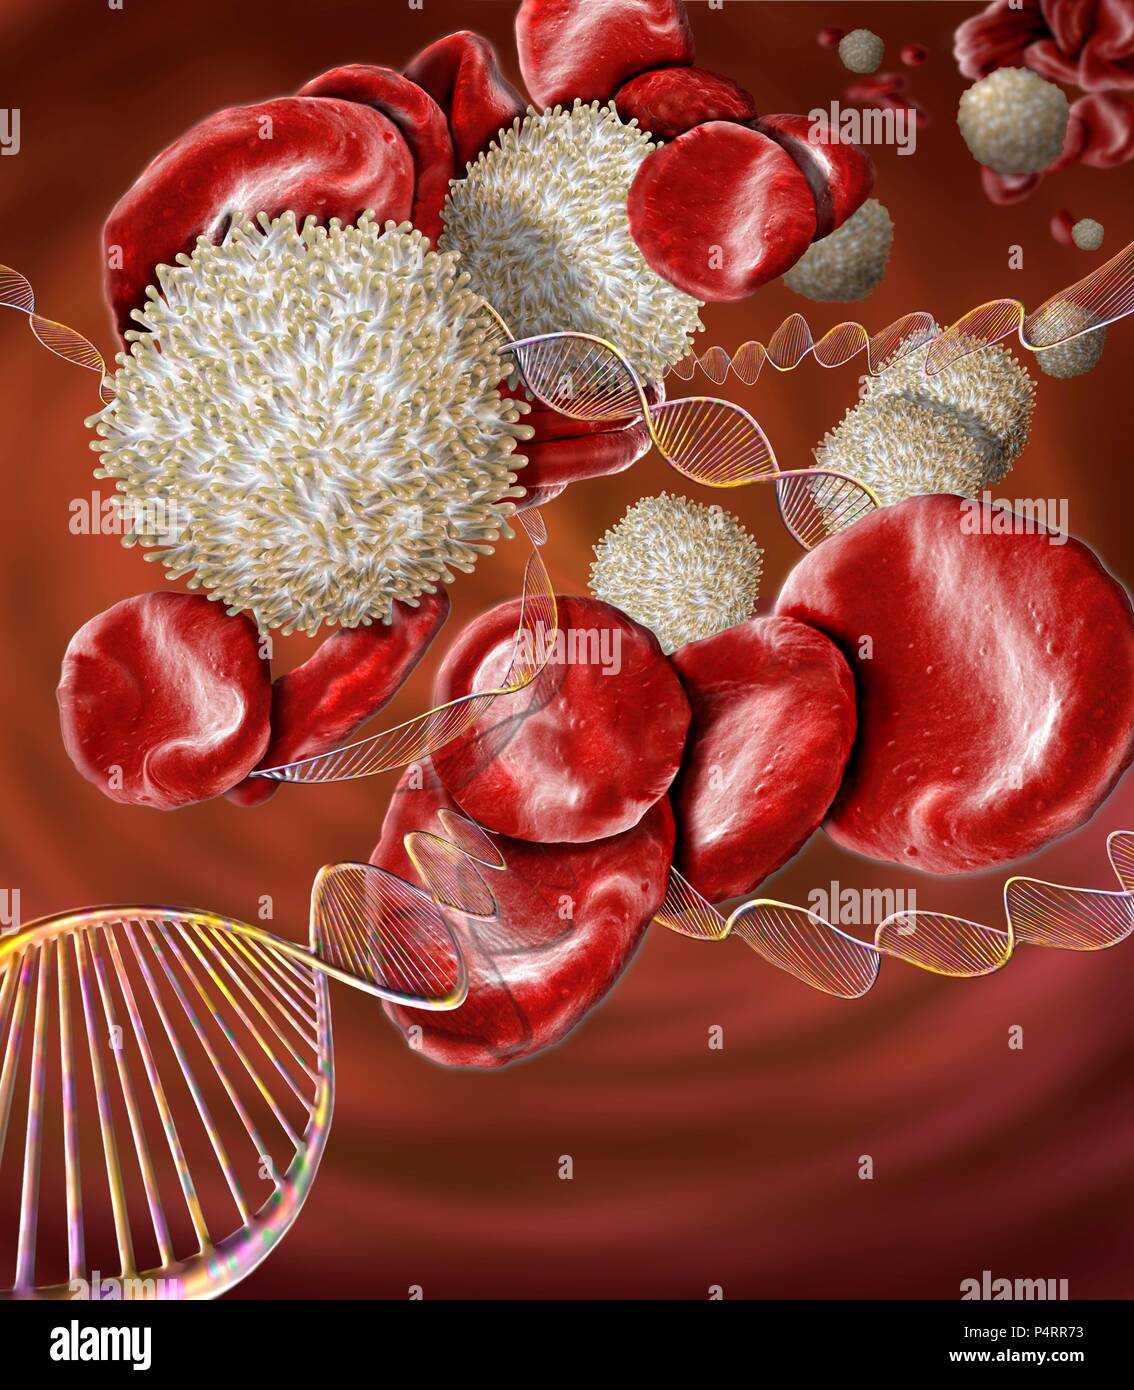 Erkrankungen des Blutes, konzeptionelle zusammengesetzte Bild. Scanning Electron Microscopy (SEM) und Computer Generated Images (CGI) der DNA (Desoxyribonukleinsäure) Moleküle (Helix) und die roten und weißen Blutzellen. Es gibt eine Reihe von Erkrankungen des Blutes, der durch genetische Mutationen verursacht werden und kann deshalb von den Eltern an die Kinder weitergegeben werden. Solche Erkrankungen gehören Hämophilie, Sichelzellenanämie und Thalassämie. Stockfoto